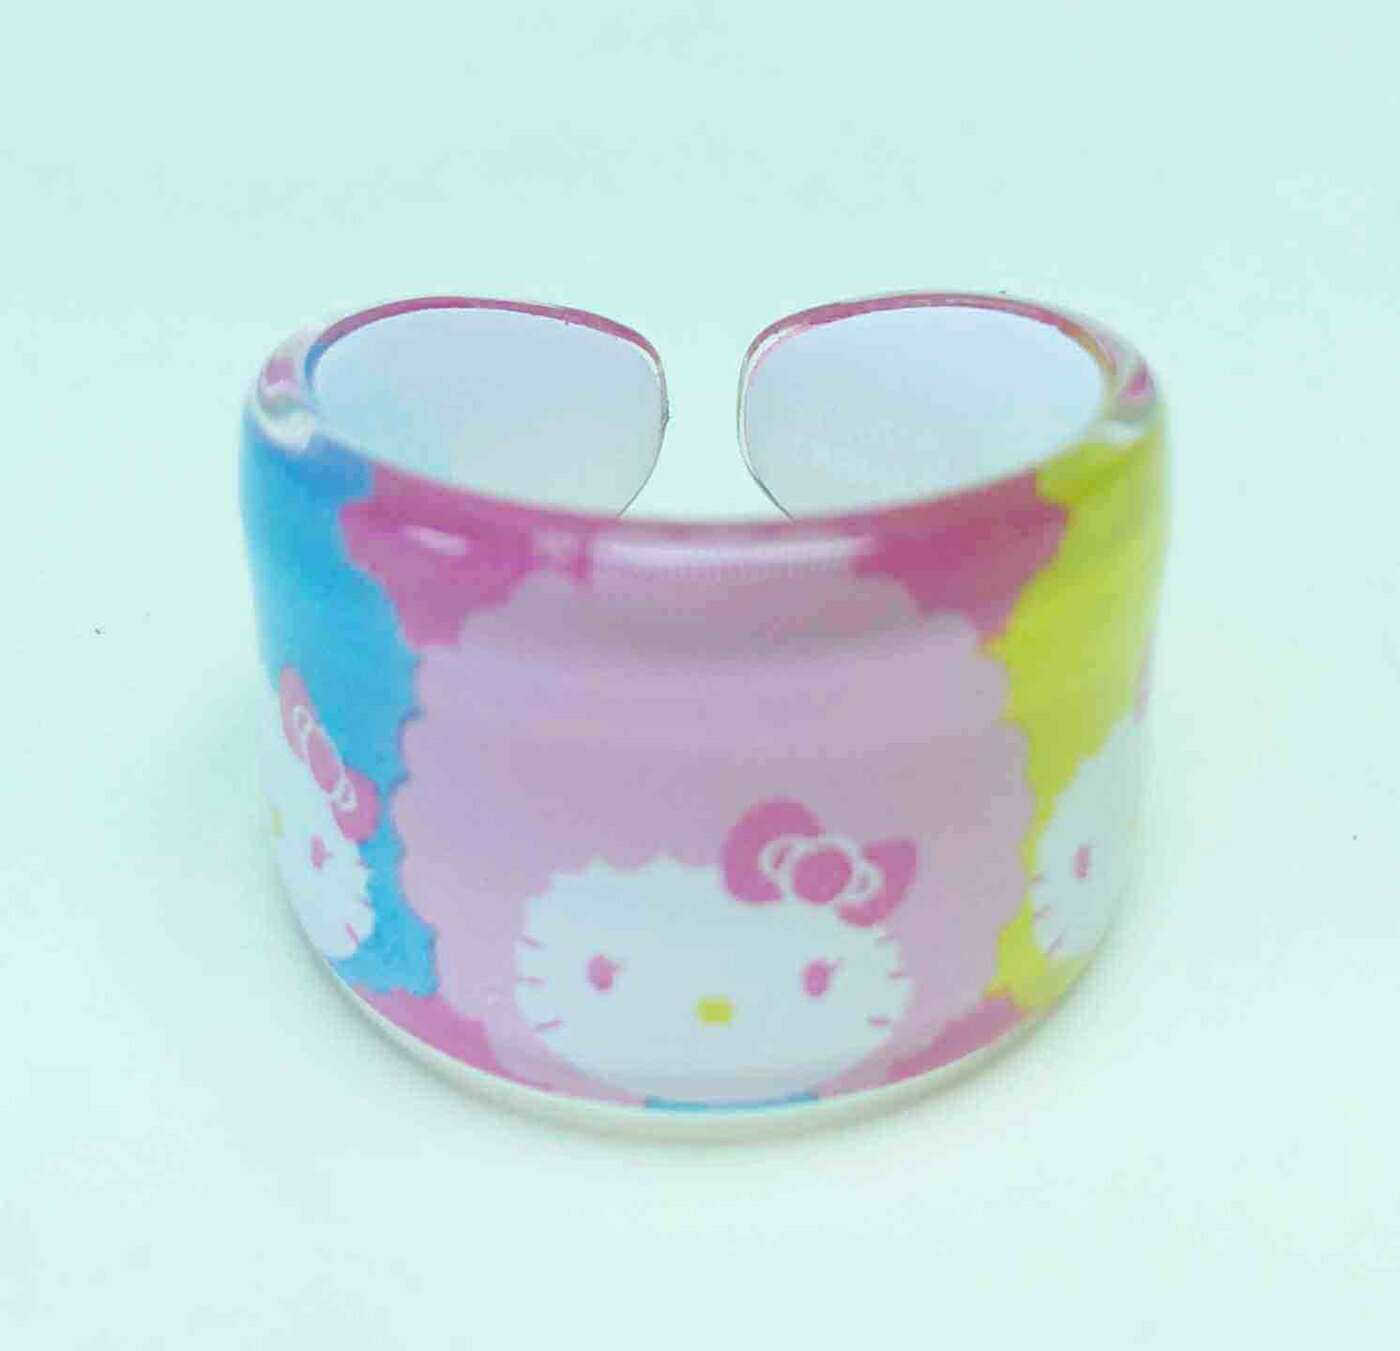 【震撼精品百貨】Hello Kitty 凱蒂貓 塑膠戒指-藍粉黃 震撼日式精品百貨